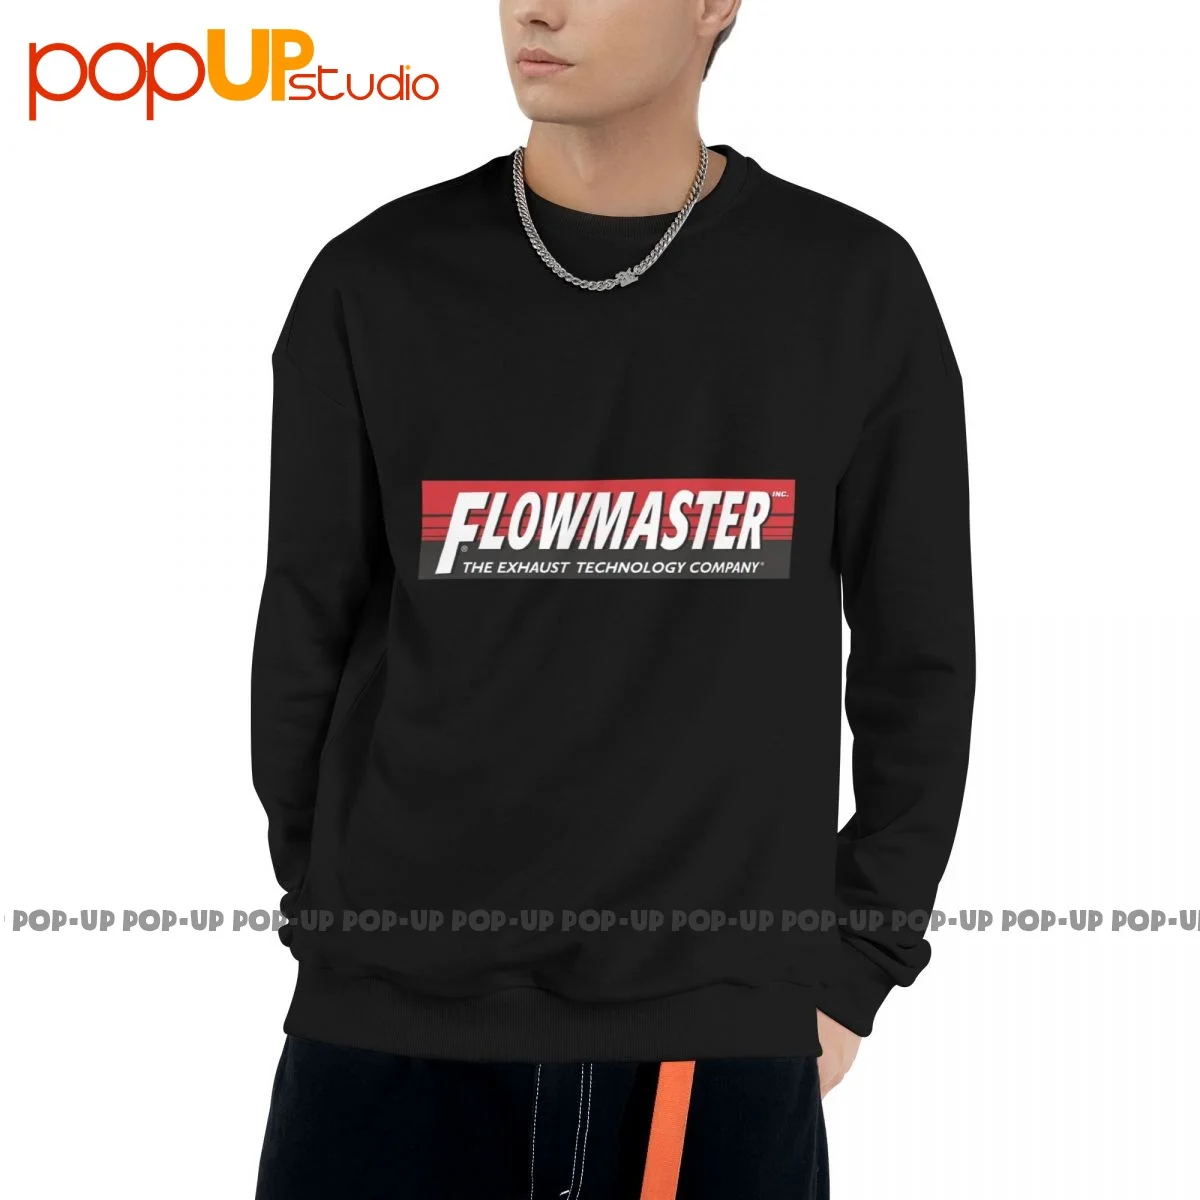 Flowmaster Exhaust Crw Parts Толстовка Пуловер Рубашки Симпатичный Унисекс Натуральный Лучшее качество